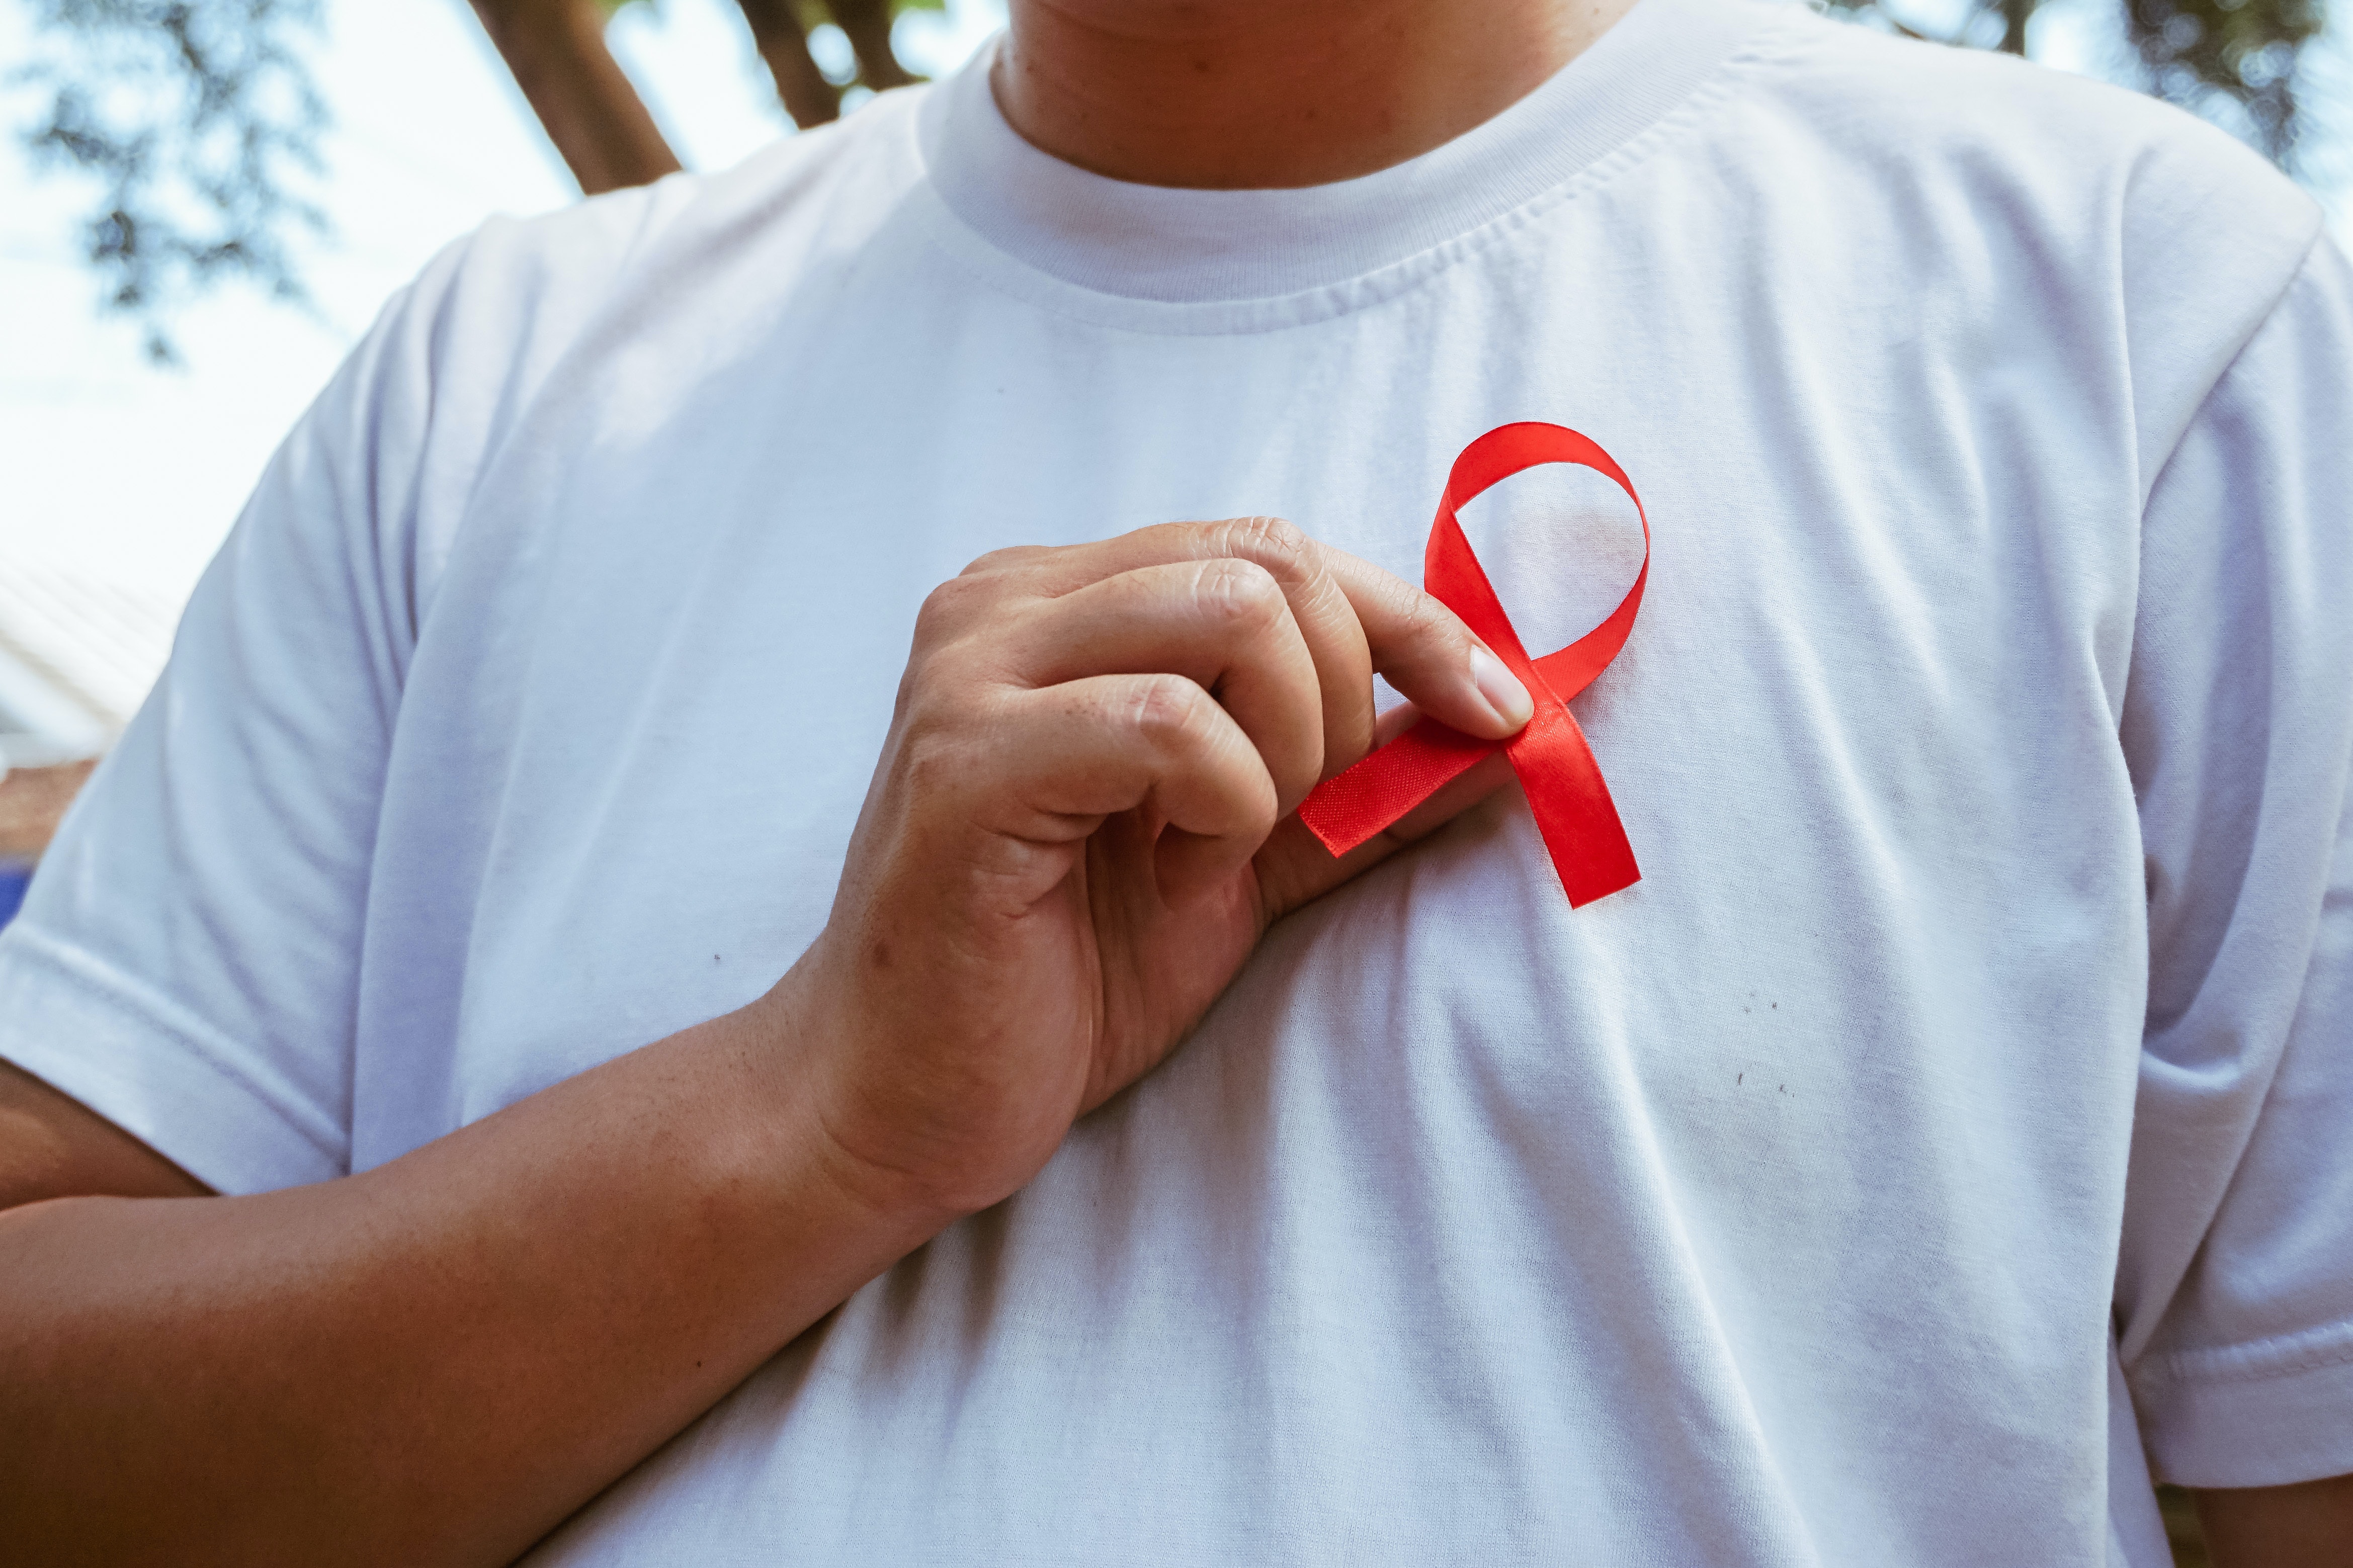 Suurbritannias kiideti äsja heaks revolutsiooniline uus HIV-ravi